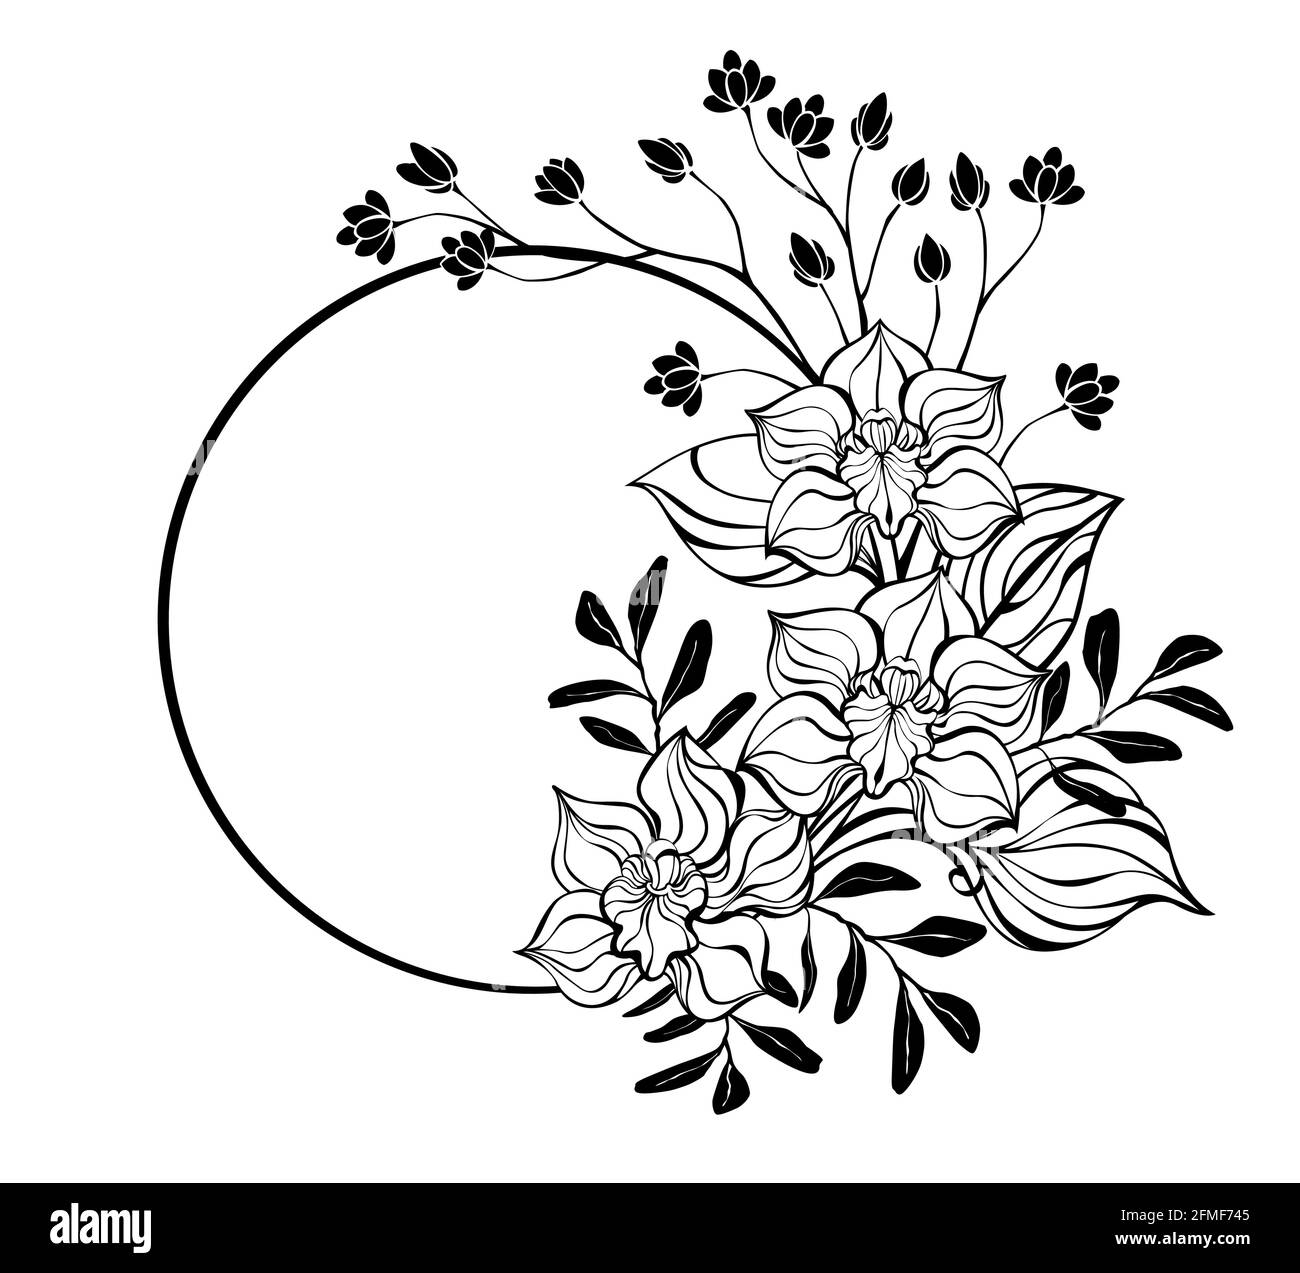 Cadre rond, orné de contours, fleurs d'orchidées dessinées artistiquement sur fond blanc. Coloriage. Illustration de Vecteur